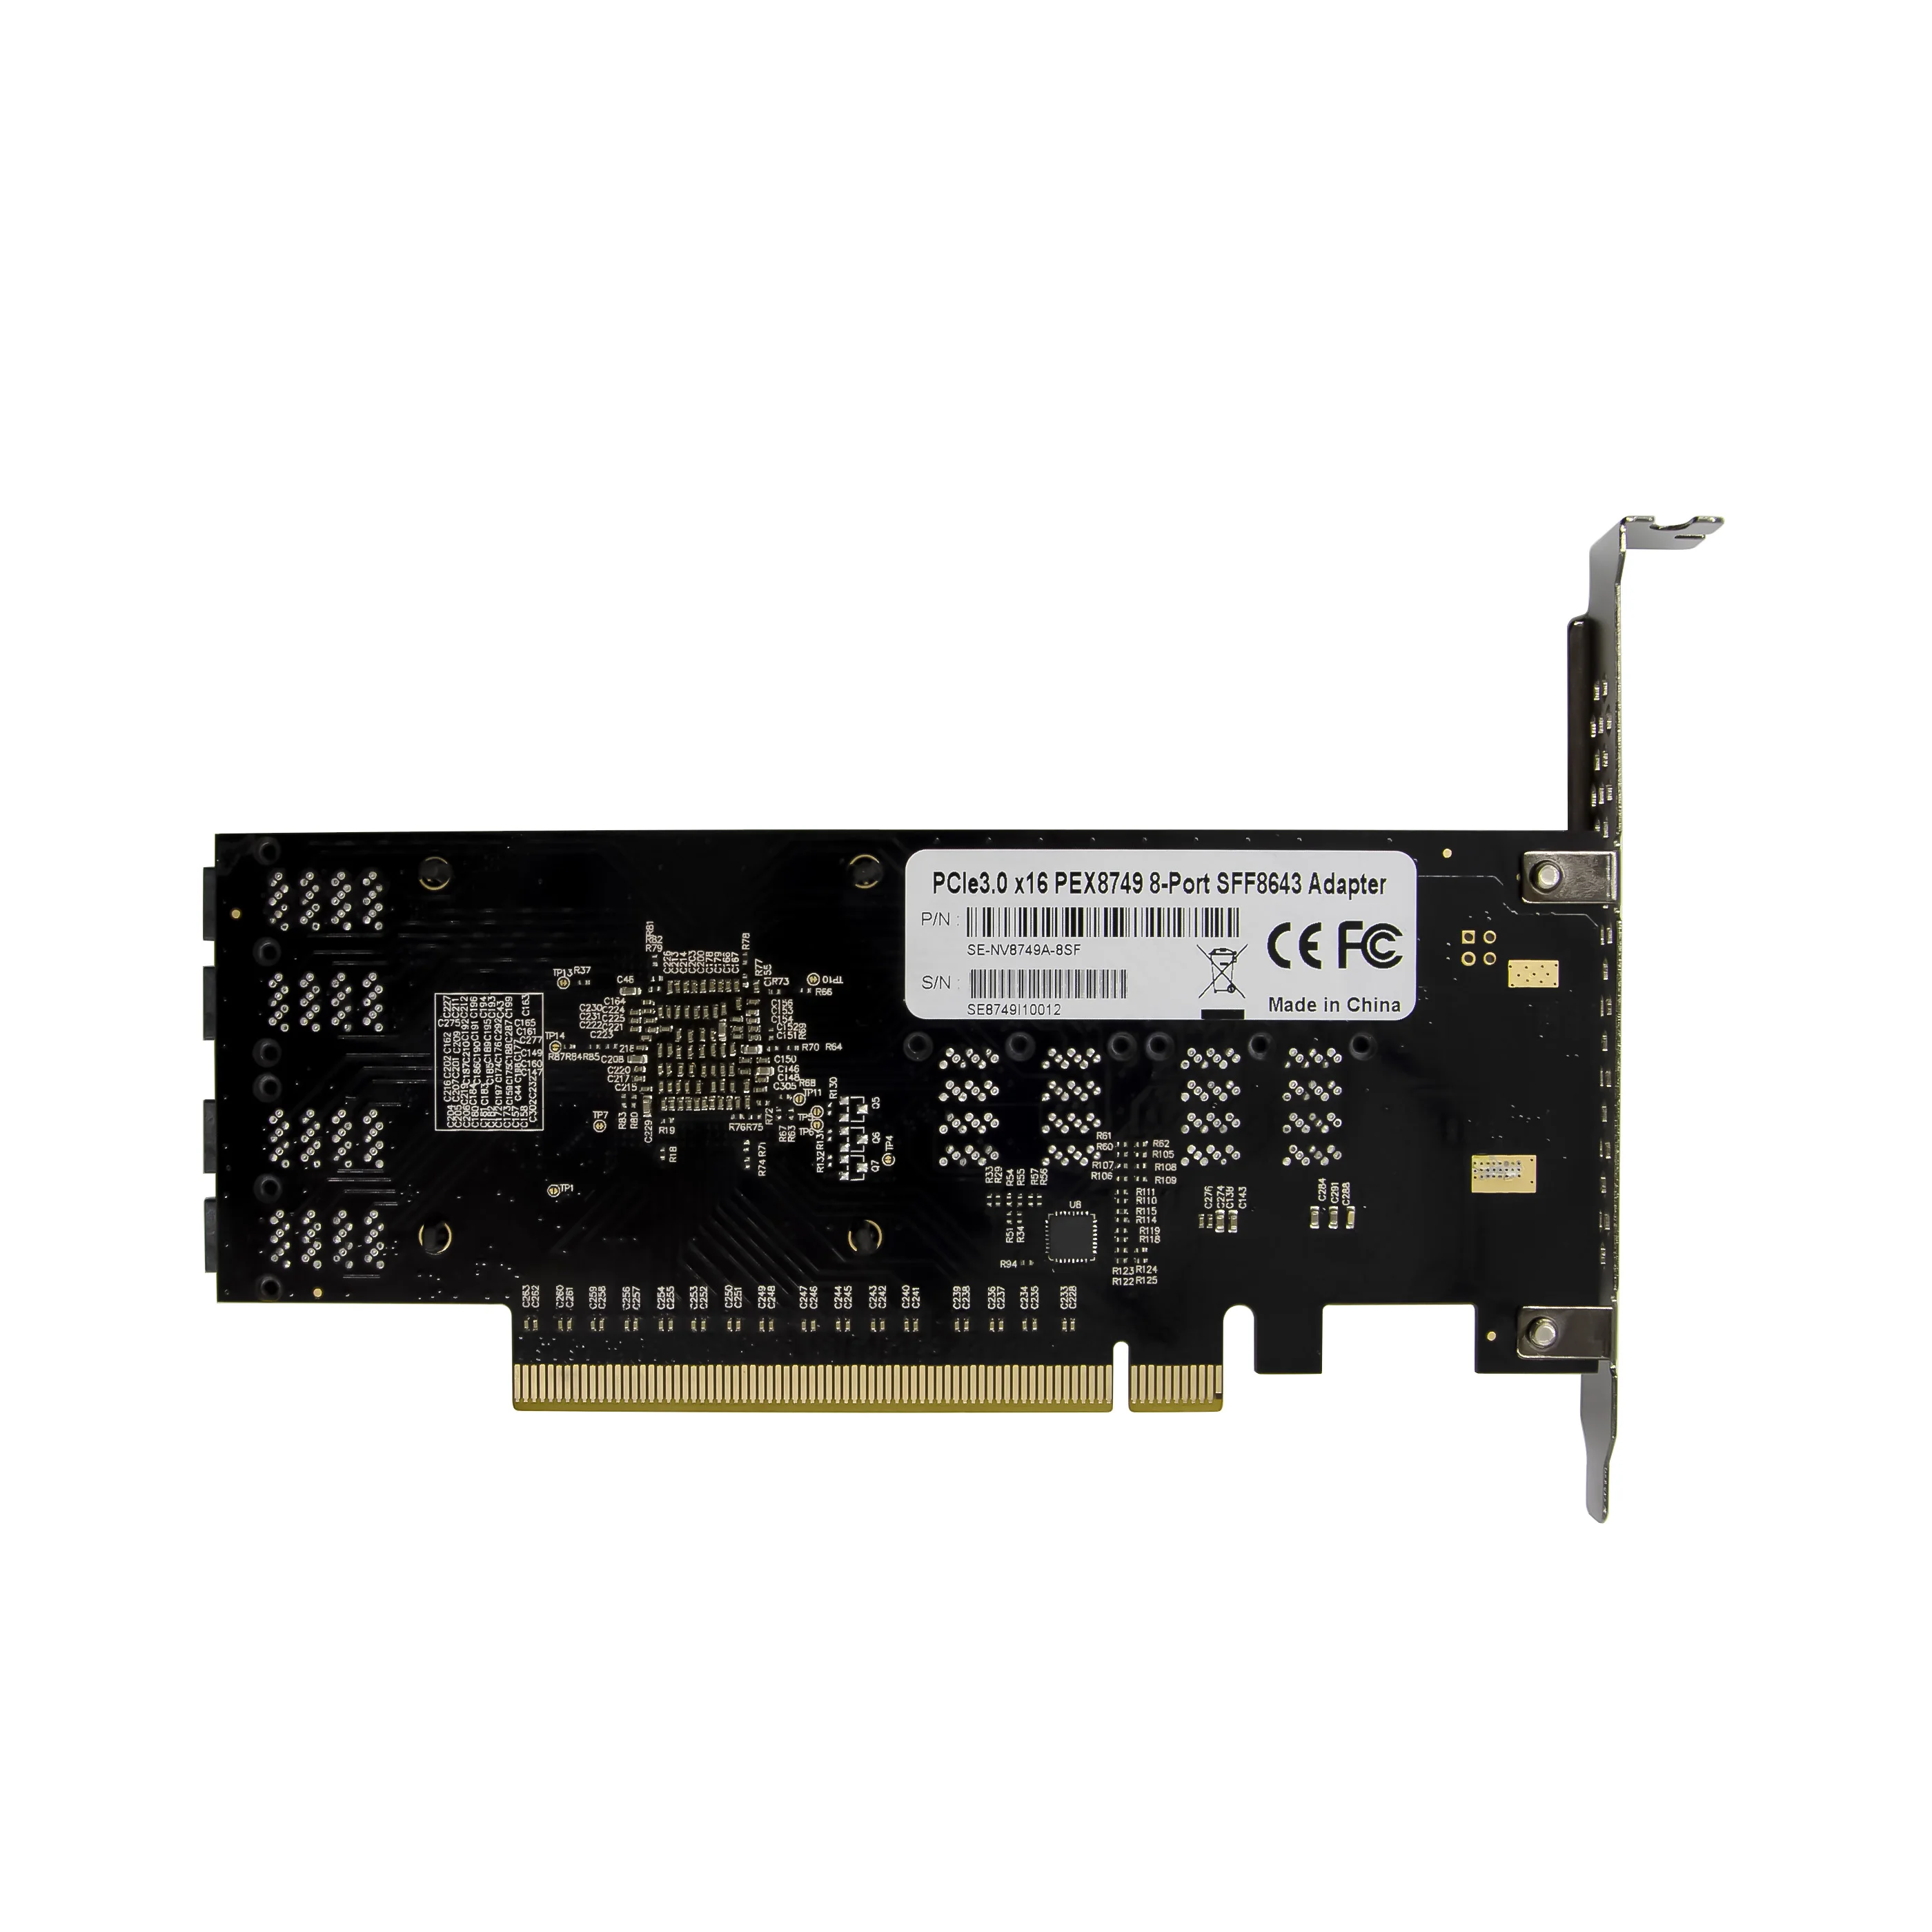 ST538 PCIe X16 8 x SFF8643 PEX8749 U.2 Host Bus NVME Card